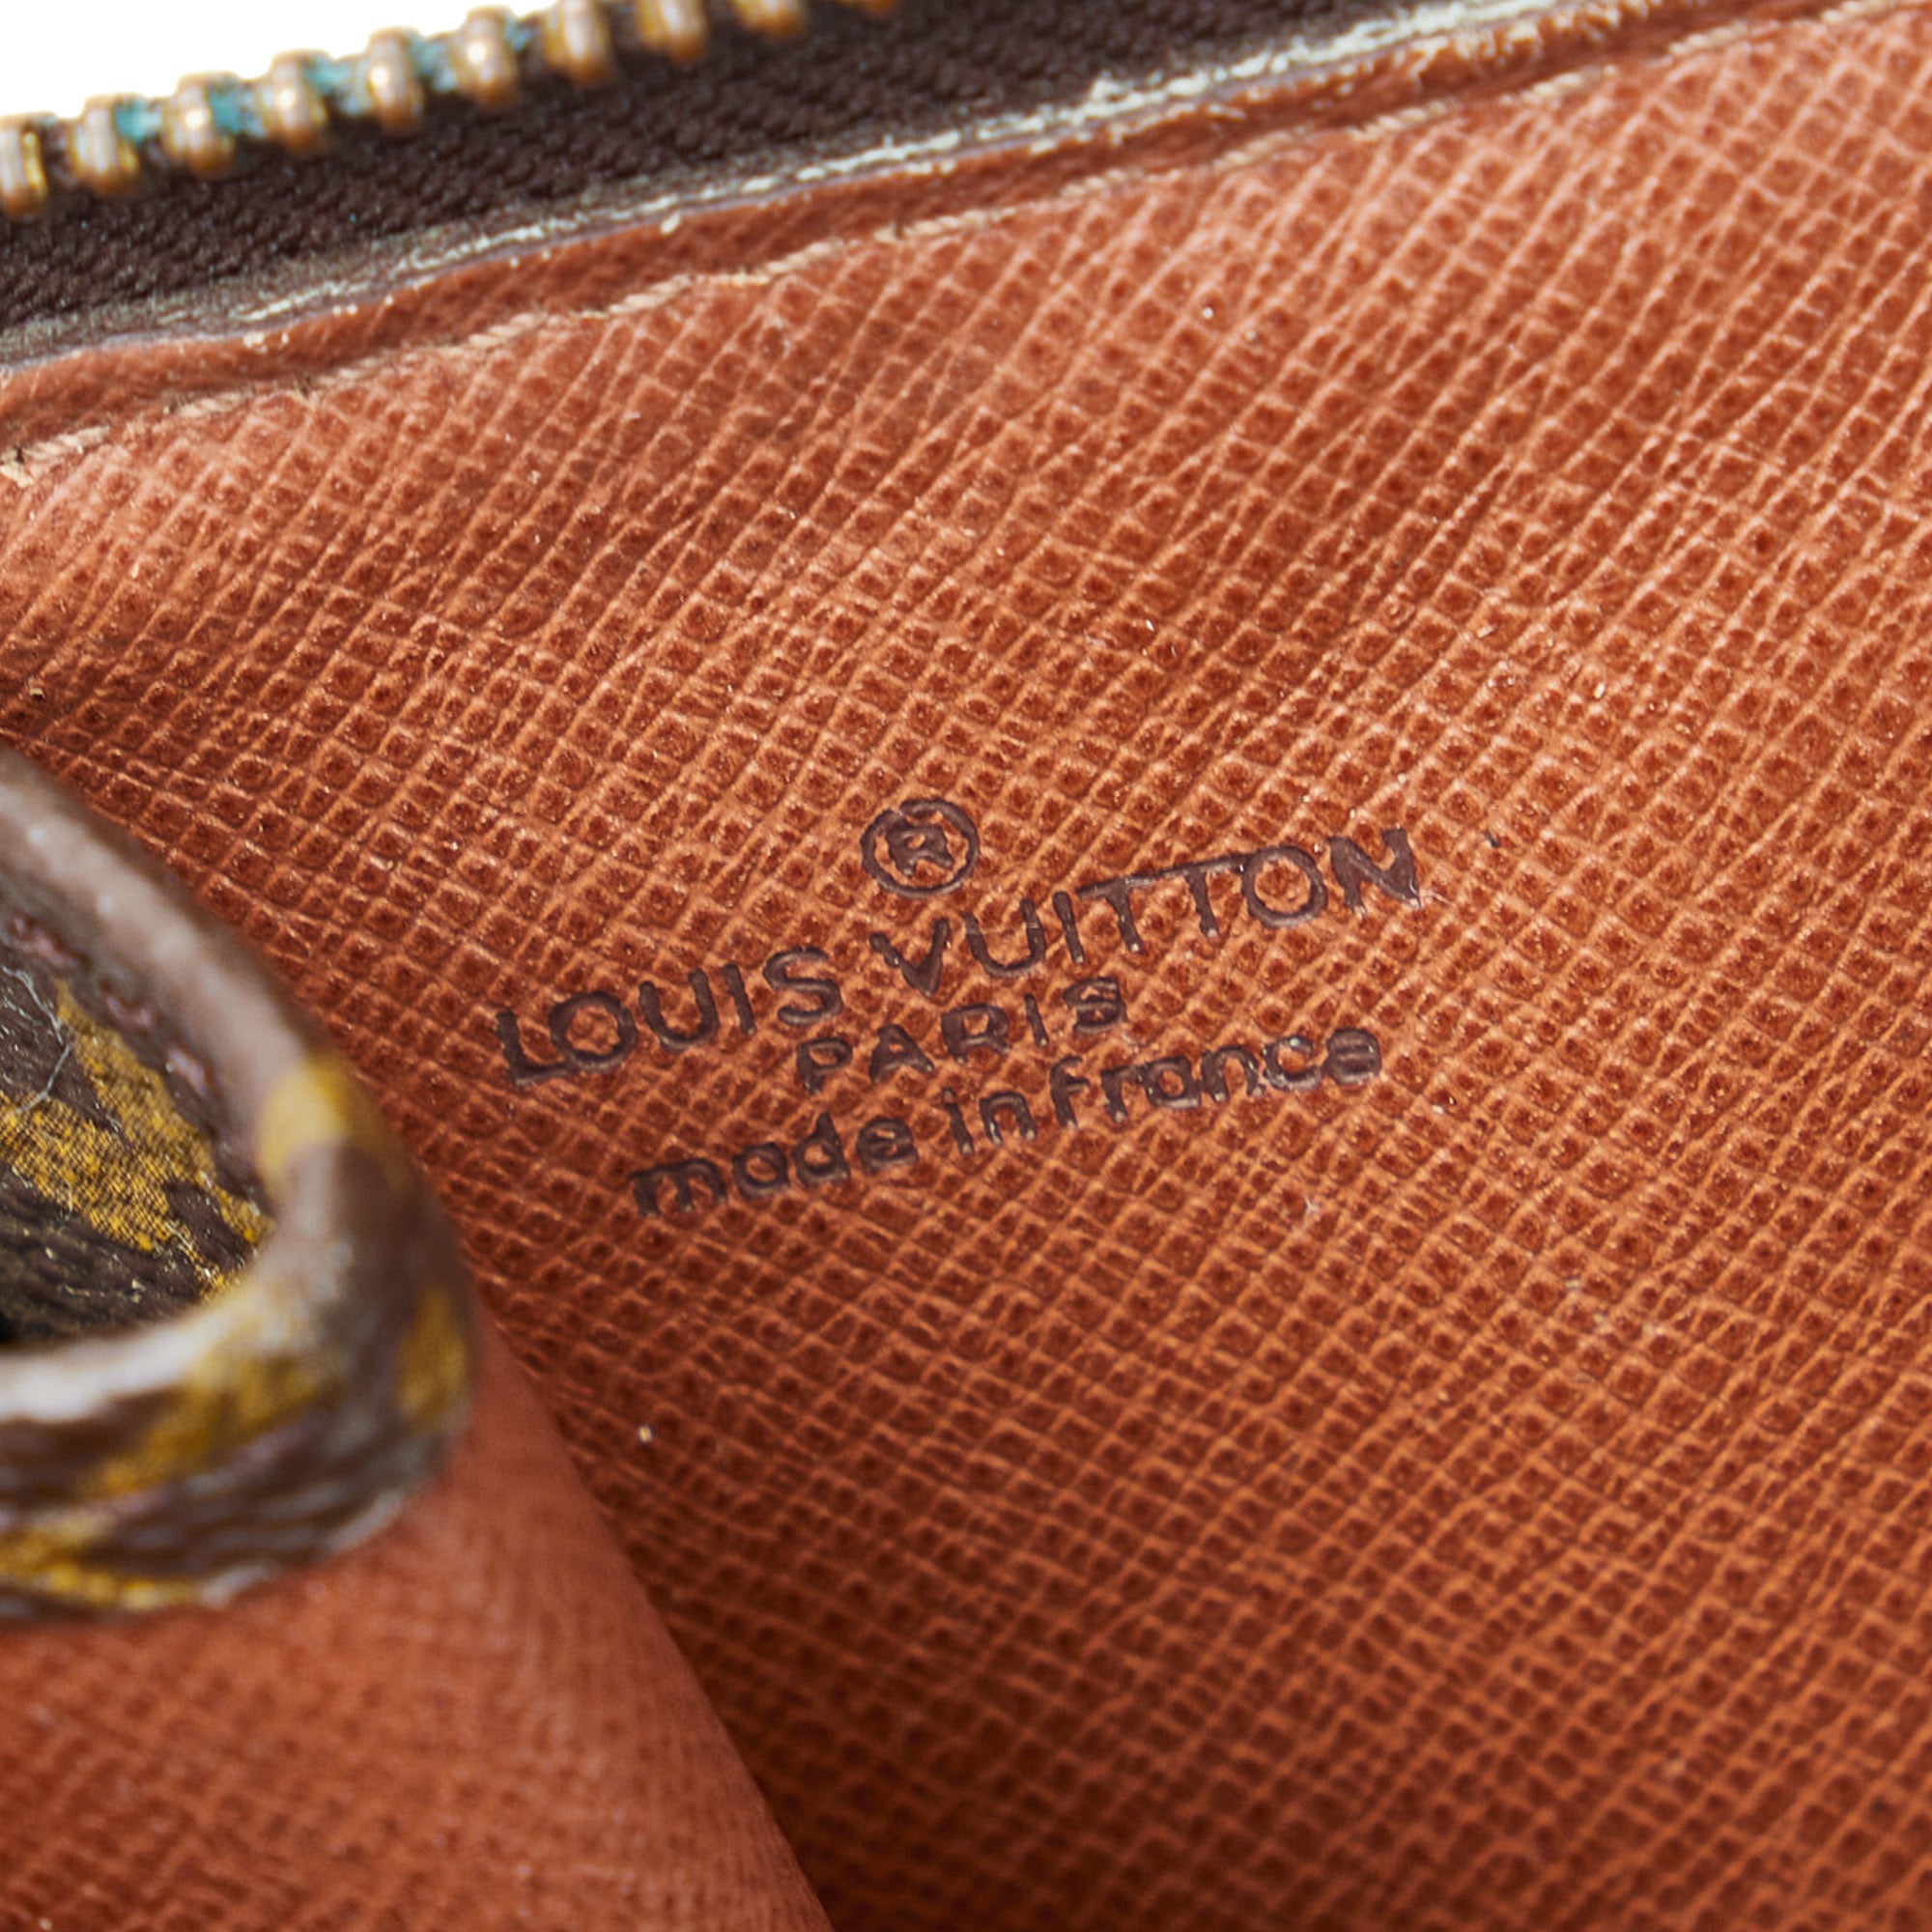 Louis Vuitton, Bags, Vintage Louis Vuitton Portfolio Document Holder